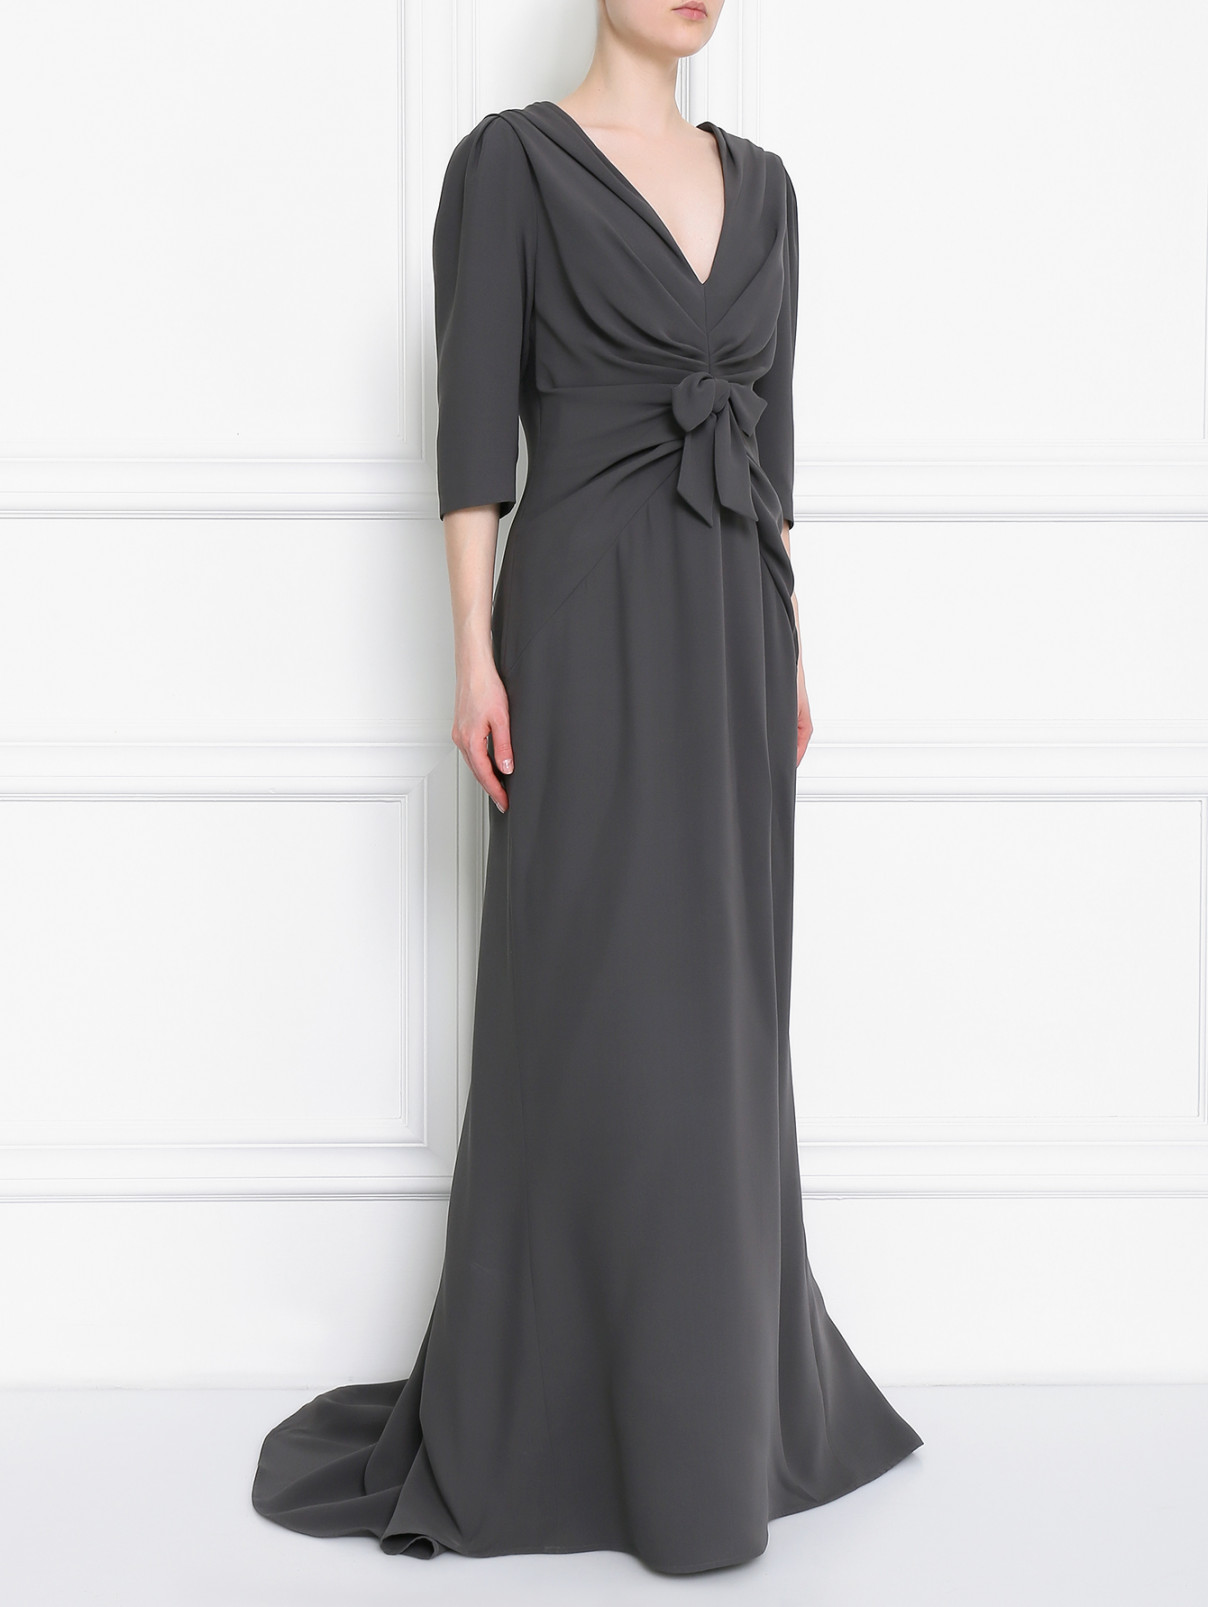 Платье-макси из шелка с драпировкой Carolina Herrera  –  Модель Общий вид  – Цвет:  Серый